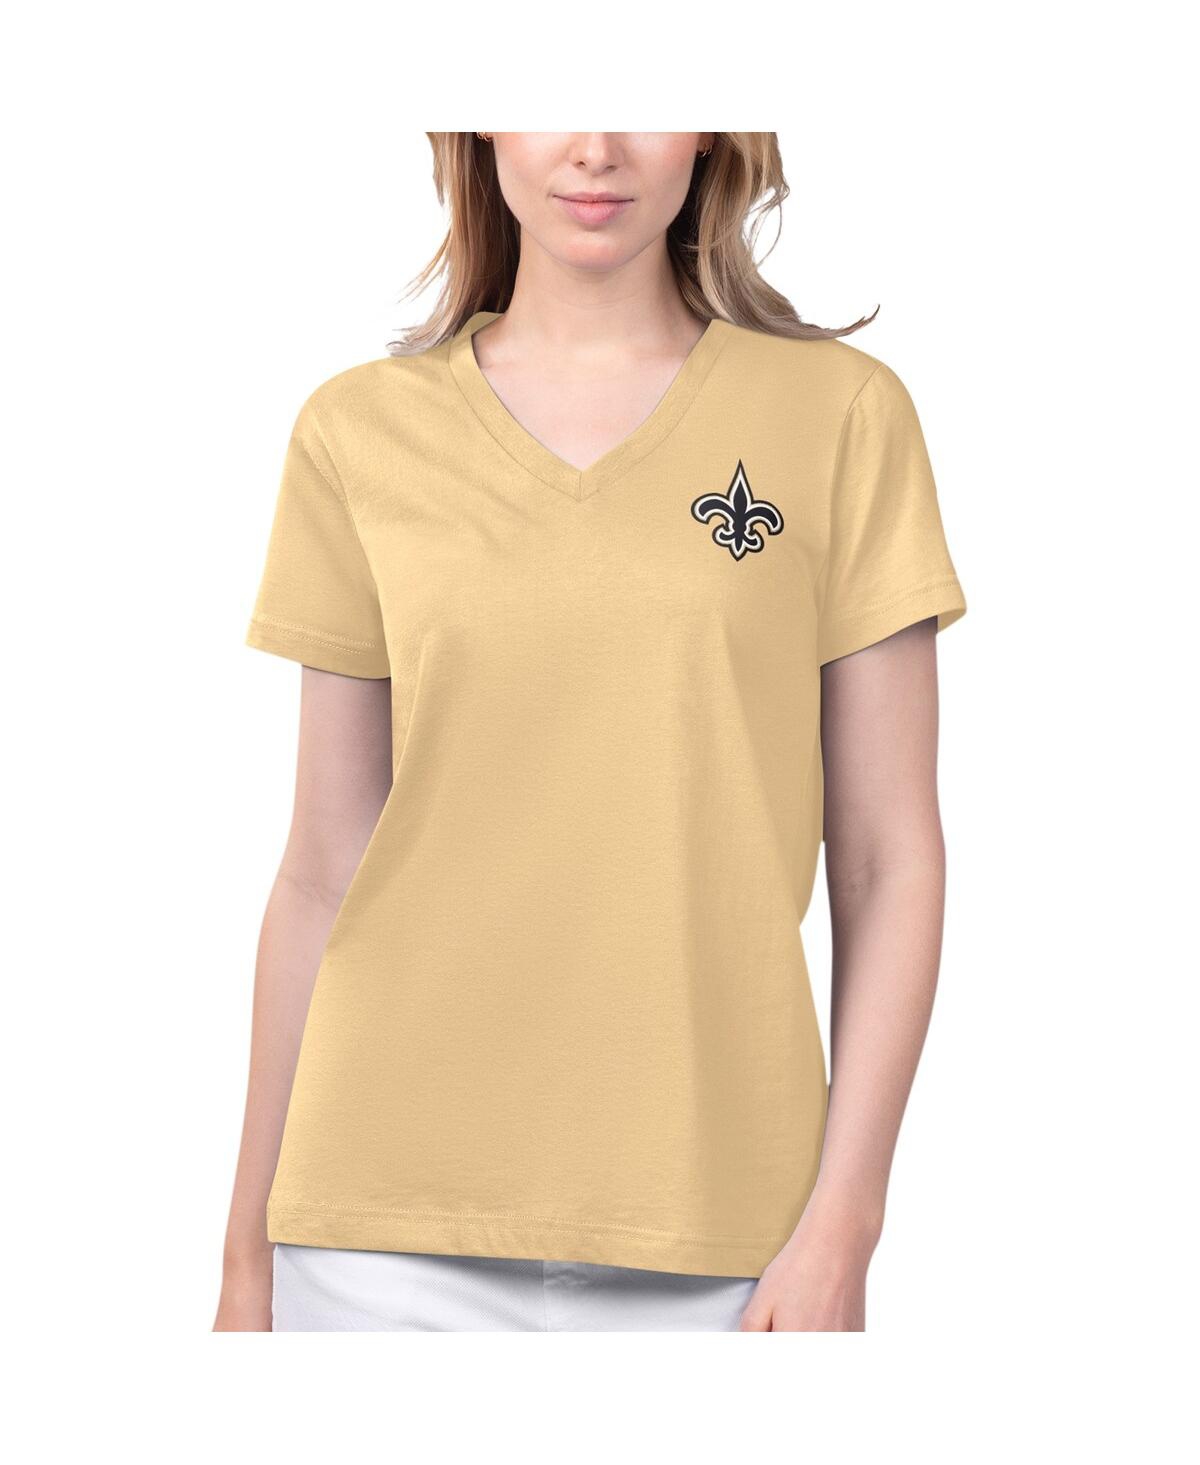 Women's Margaritaville Gold New Orleans Saints Game Time V-Neck T-shirt - Gold